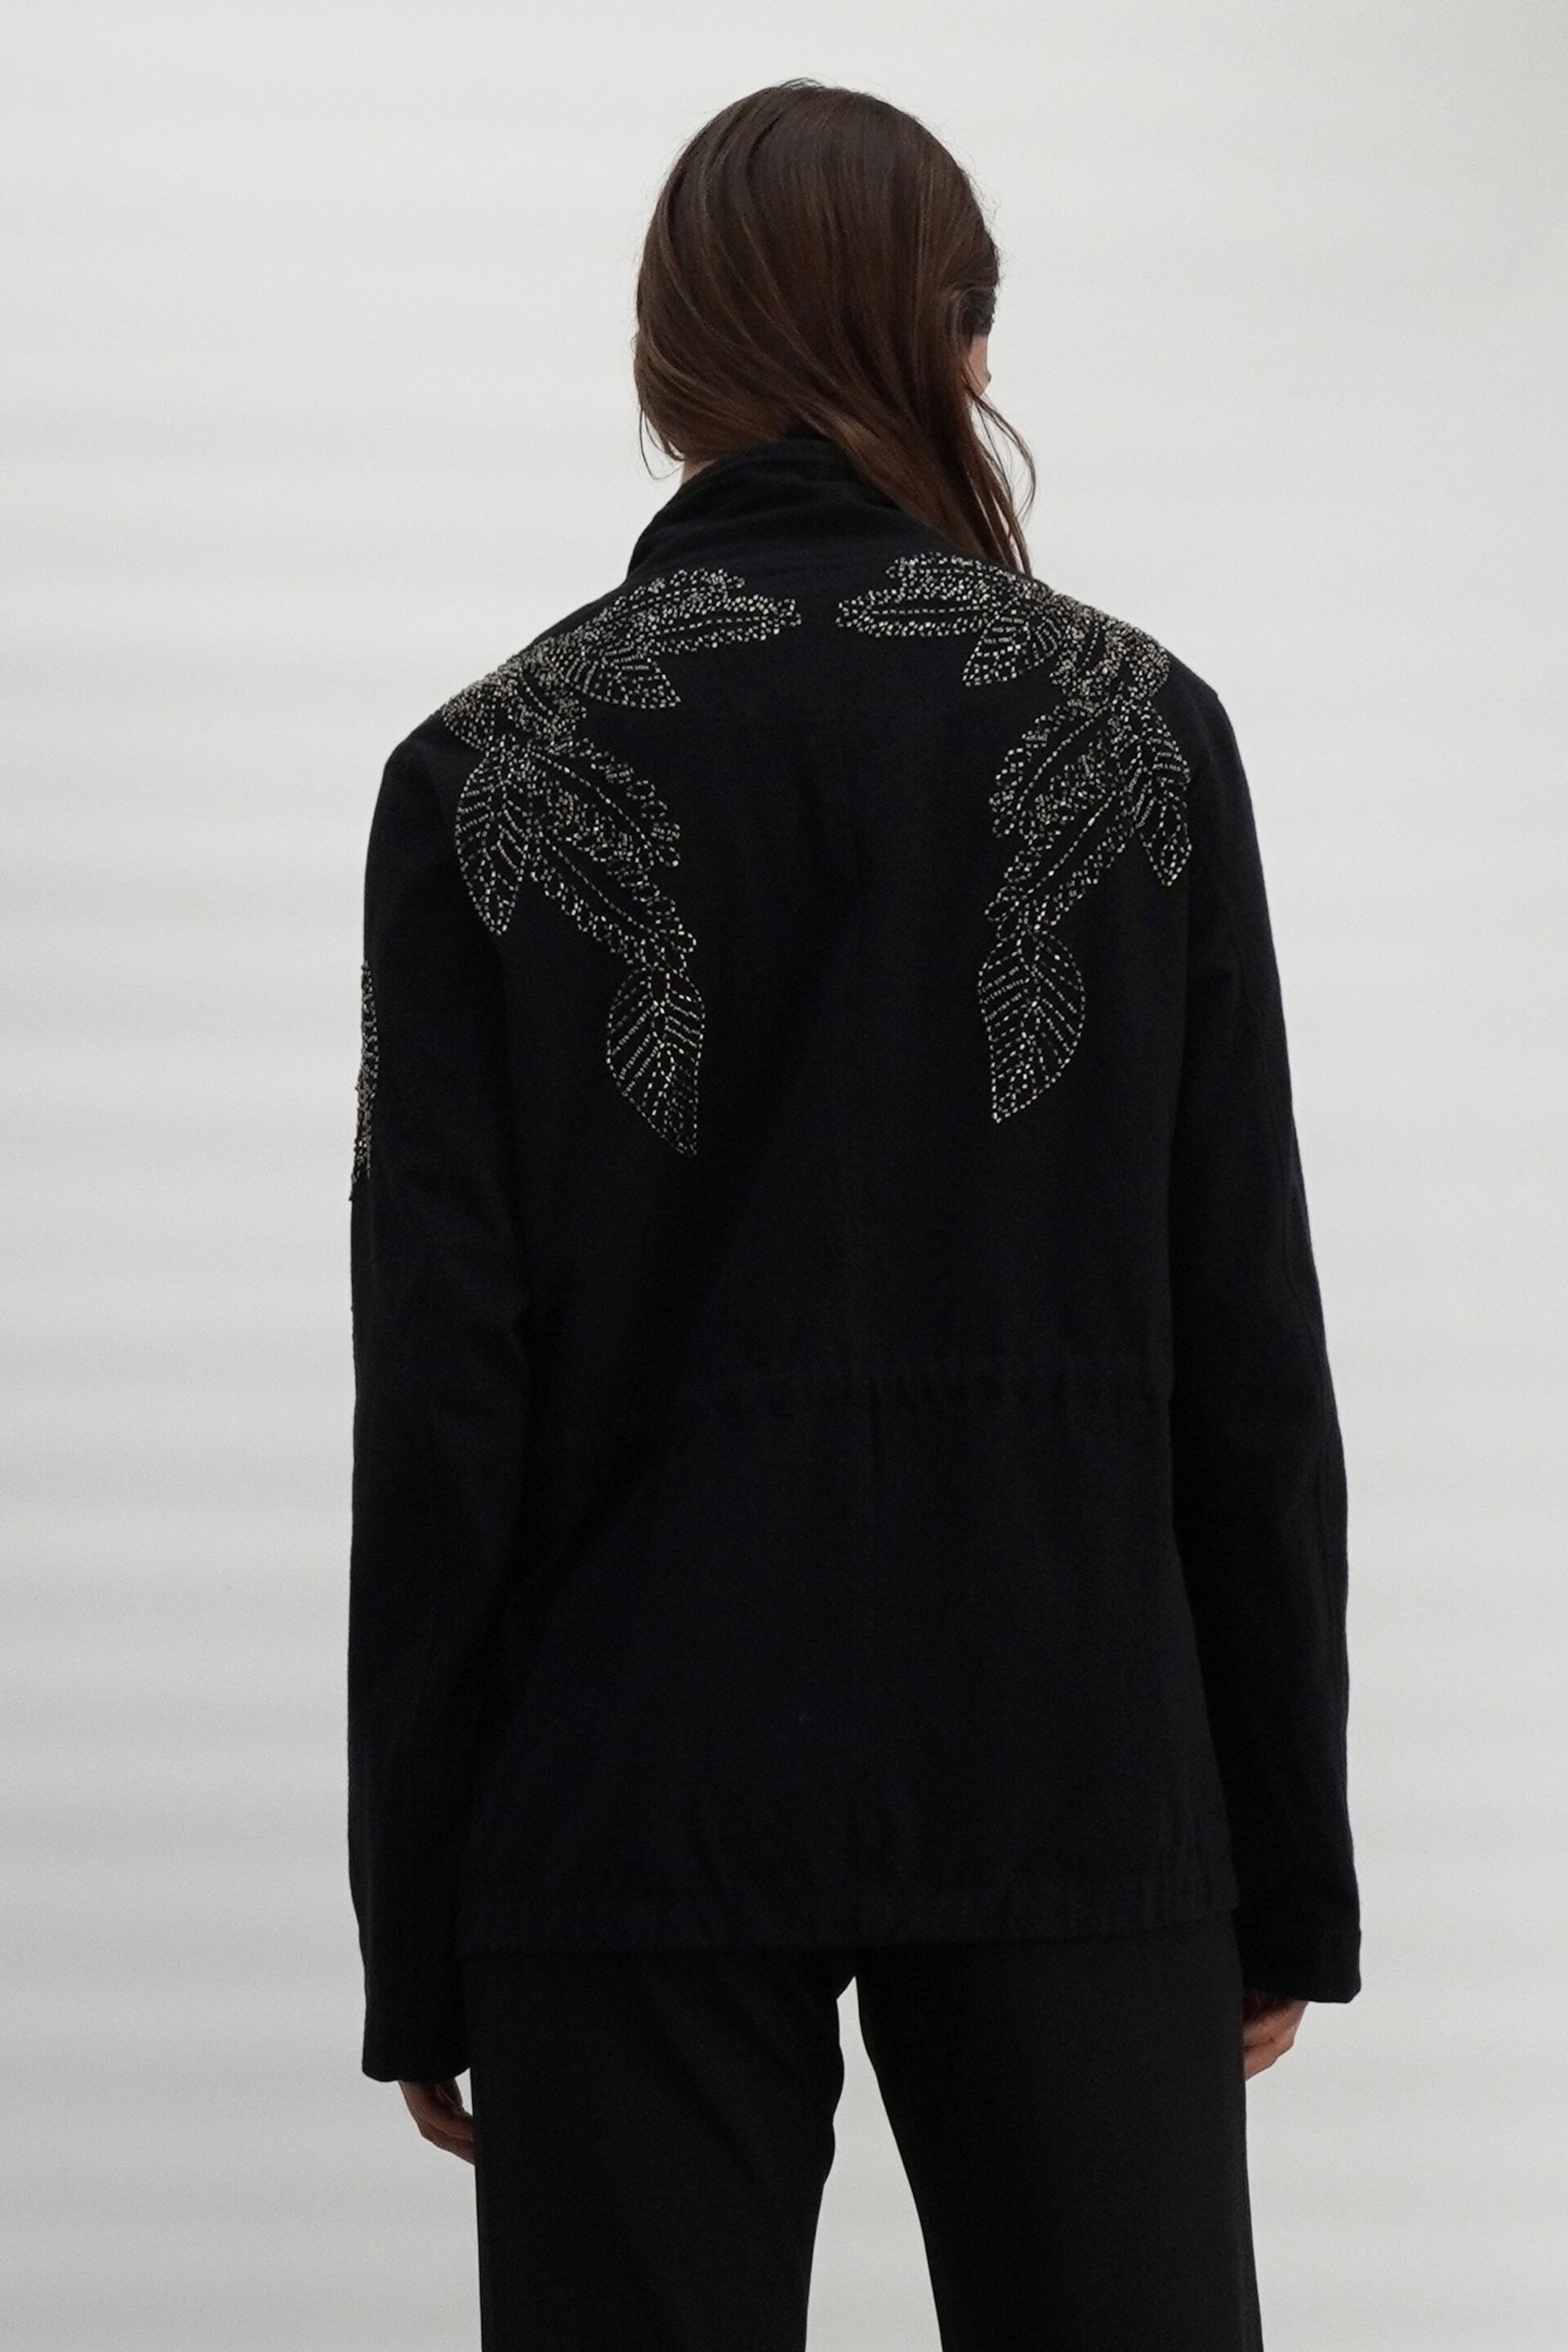 Religion Black Hand-Embellished Utility Style Jacket with Drawstring Waist - Image 3 of 10